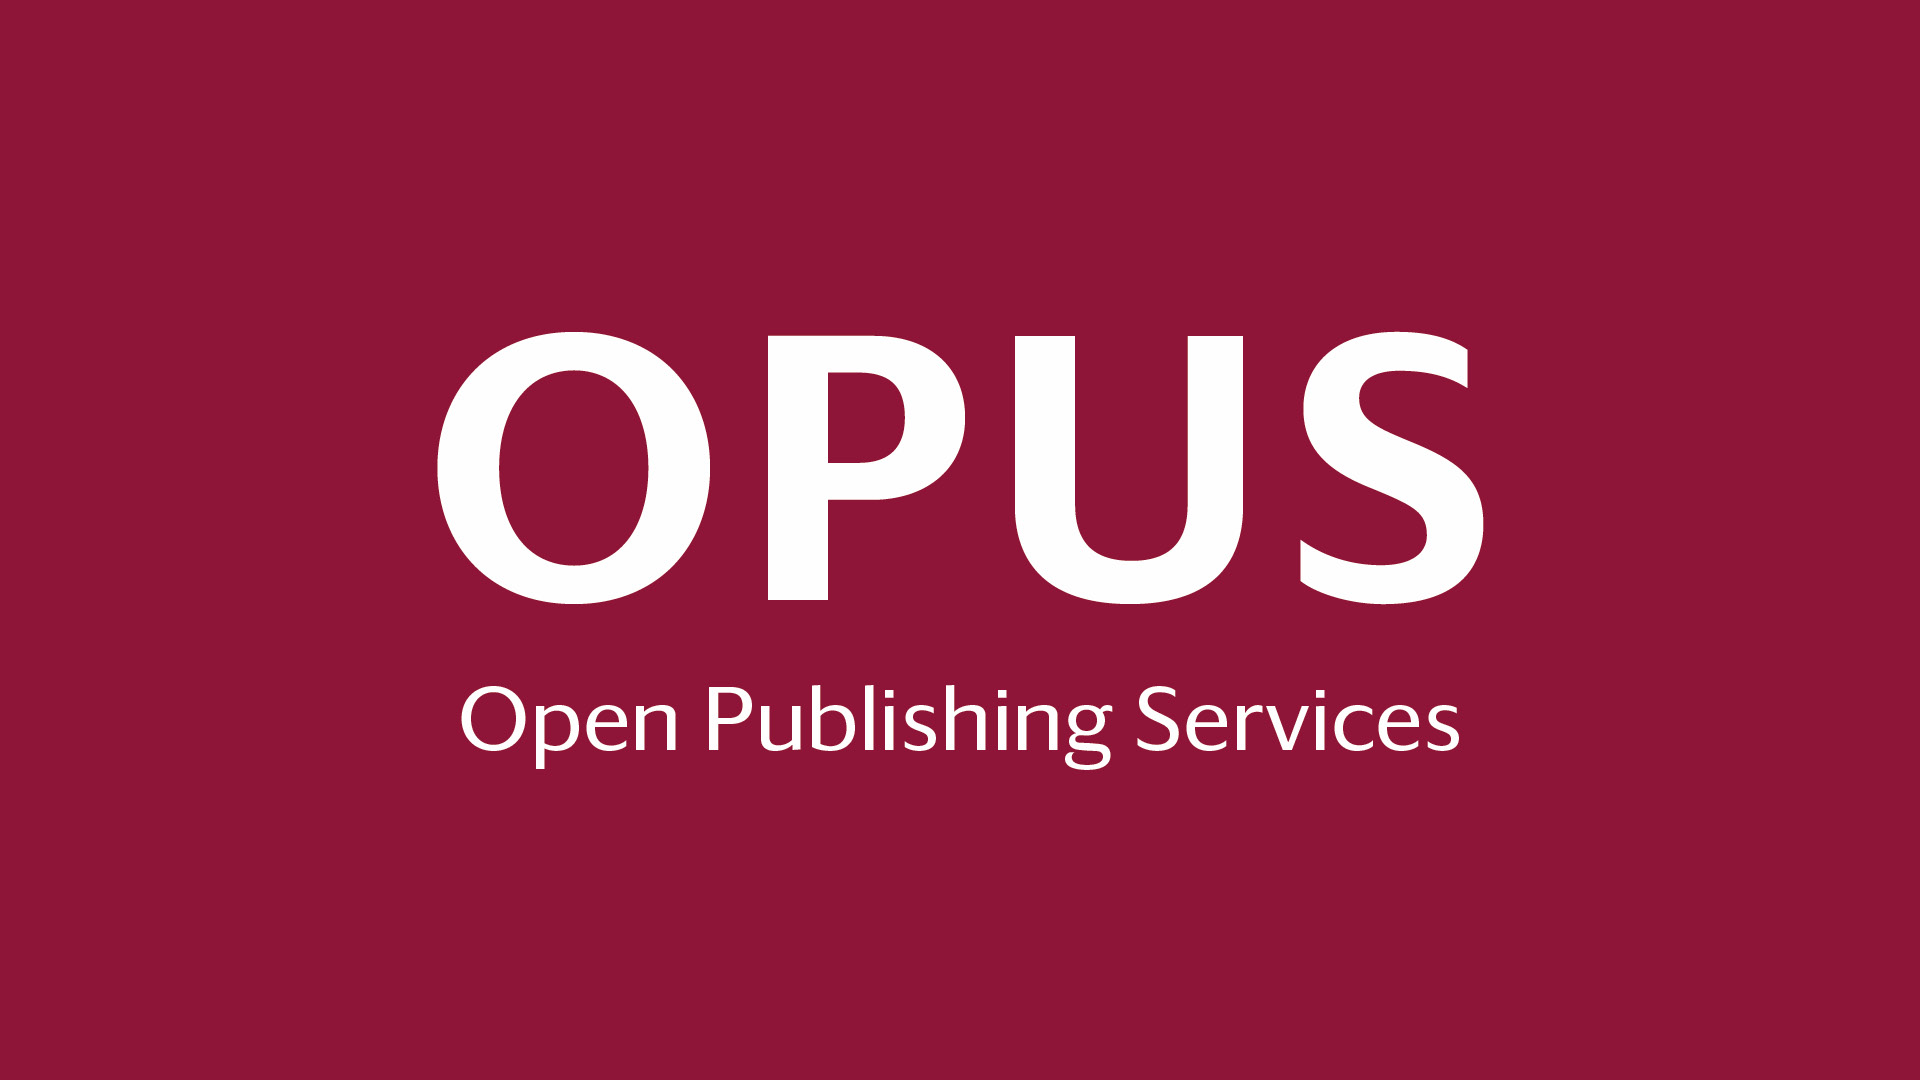 OPUS plateforme éditoriale Université PAris Cité